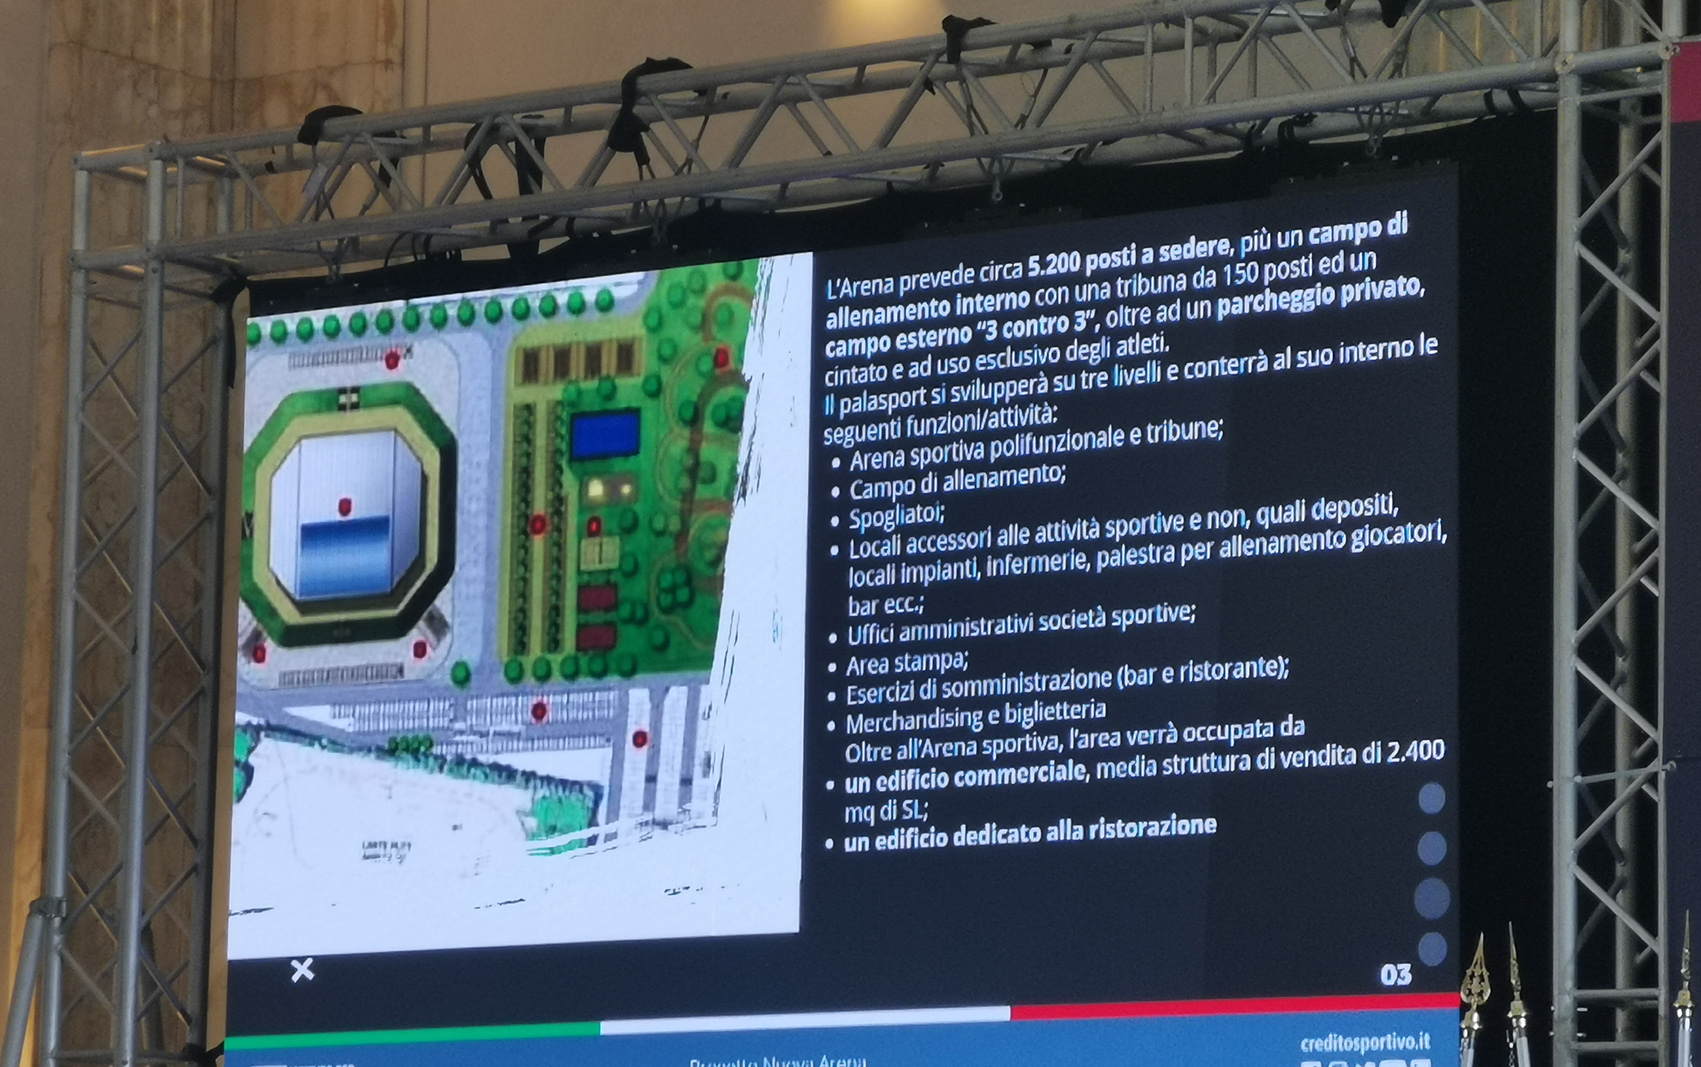 Galleria Impianti sportivi Giochi Mediterraneo Taranto 2026, presentati i progetti per lo stadio Iacovone e il Palazzetto Brindisi - Diapositiva 10 di 14